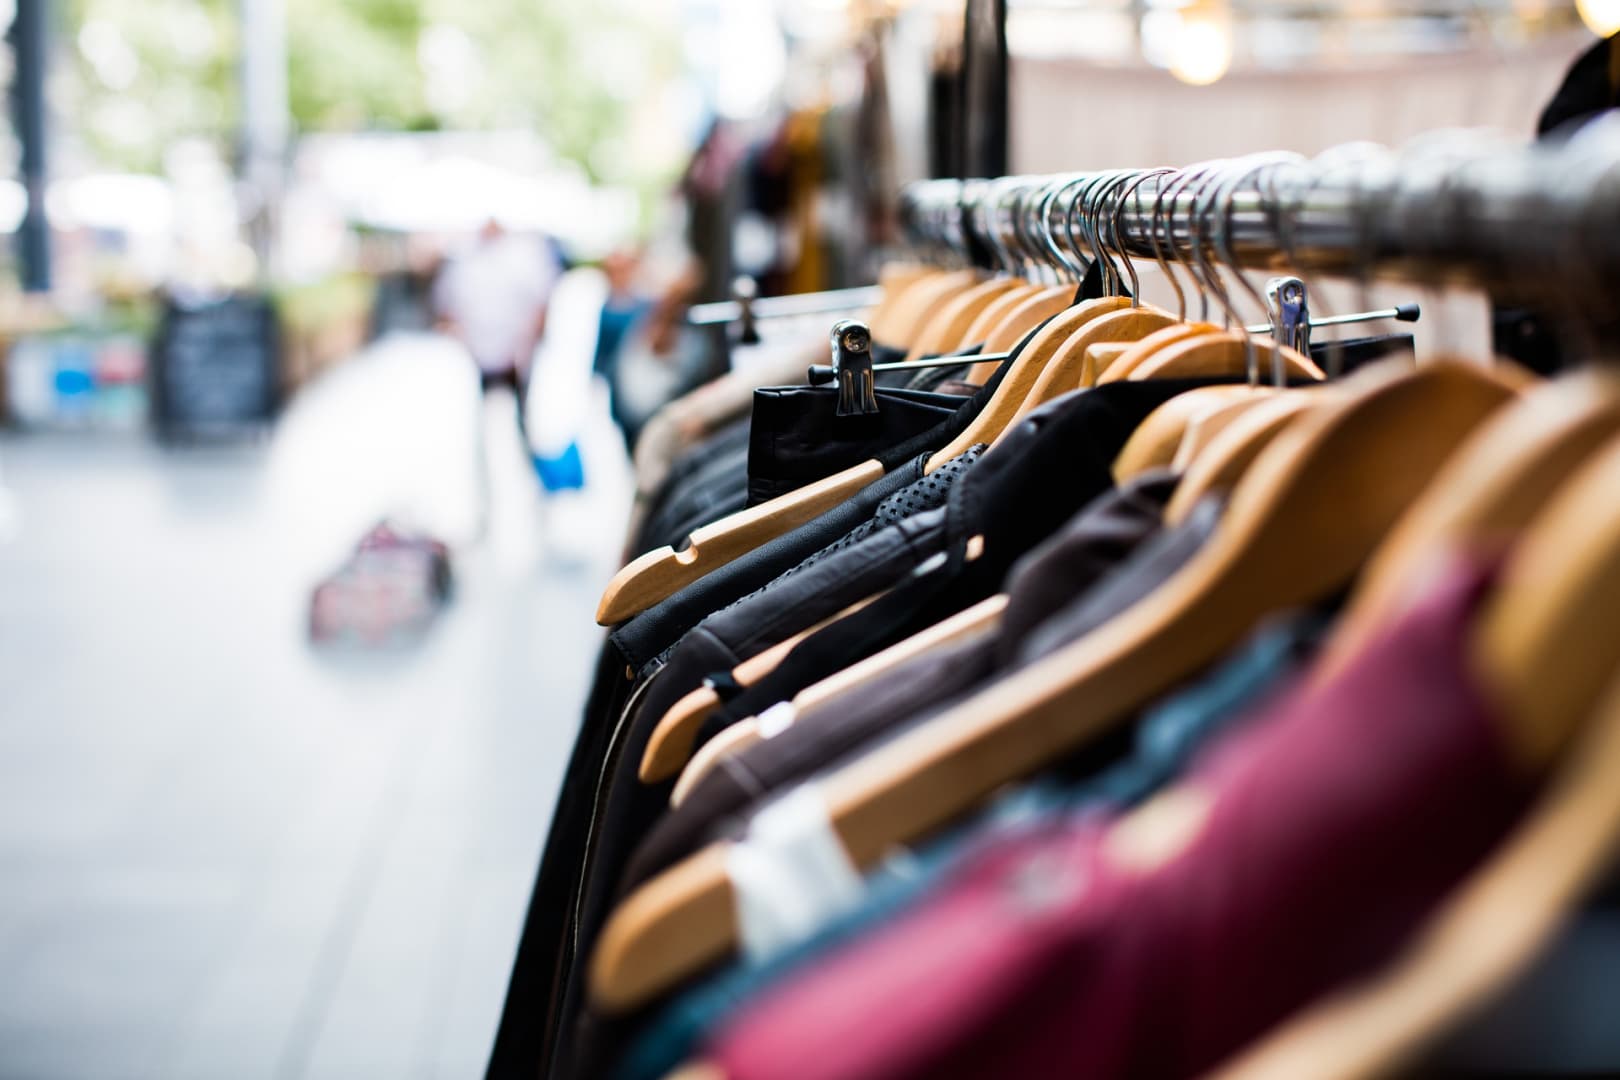 Olcsó ruhaüzlet tervez újabb boltokat nyitni Szlovákiában – egy magyarlakta városban is